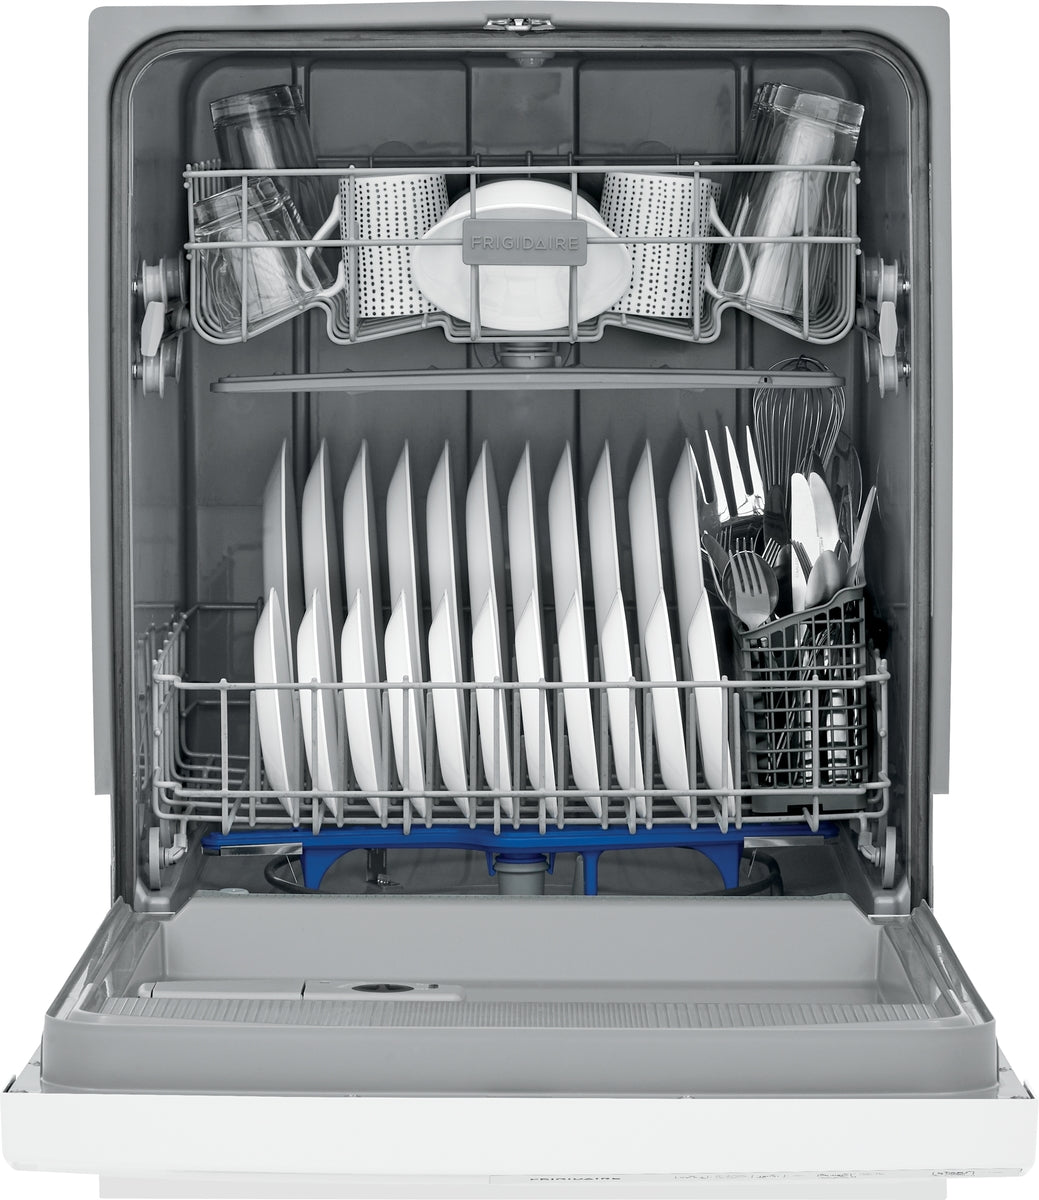 Frigidaire 24" White Dishwasher - FFCD2413UW